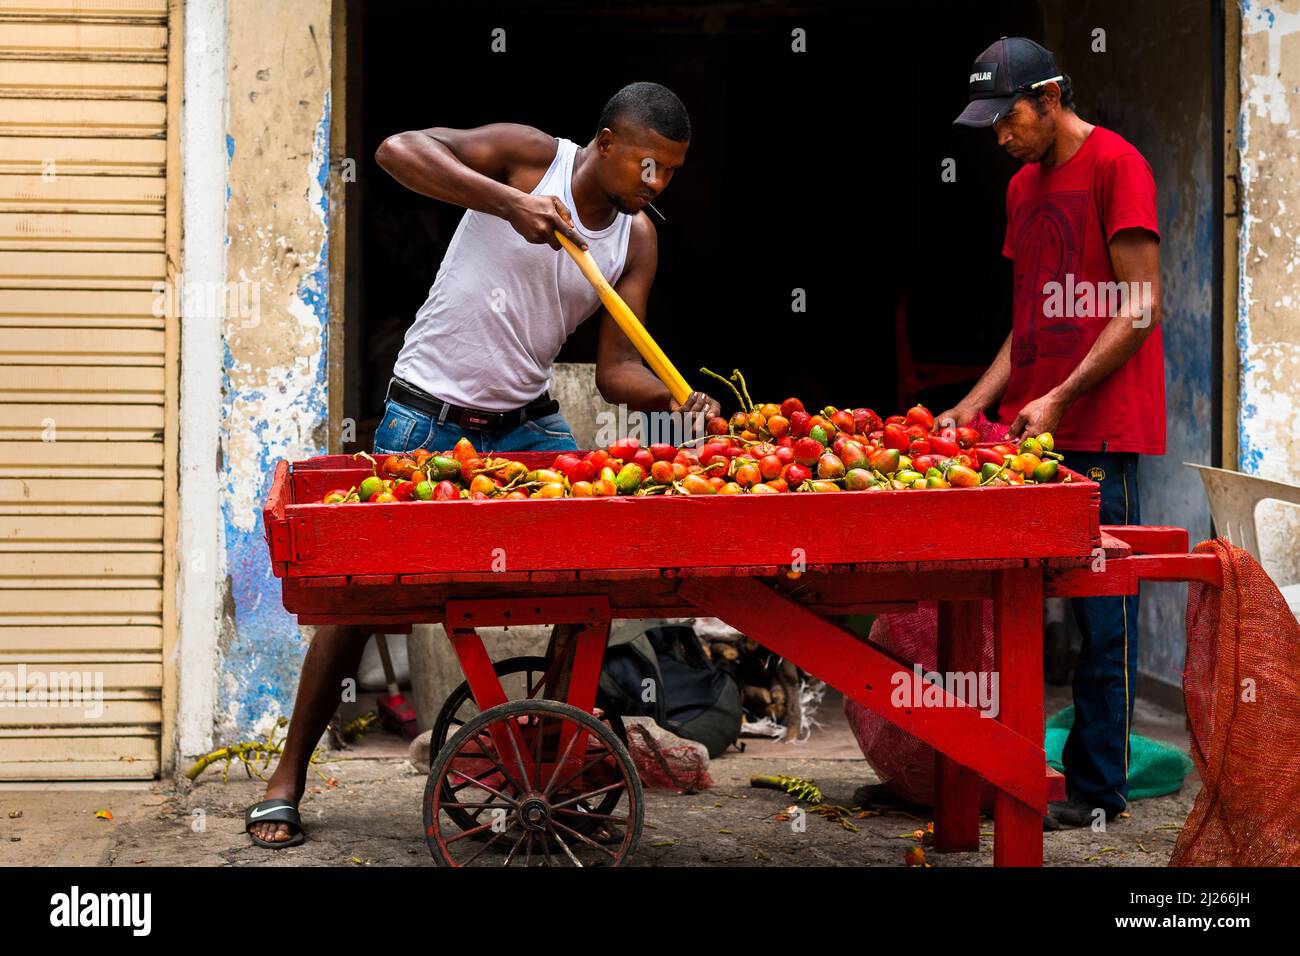 Ein afro-kolumbianischer Mann verkauft auf der Straße in Cali, Valle del Cauca, Kolumbien, rohe Chontaduro-Früchte (Pfirsichpalmen). Stockfoto